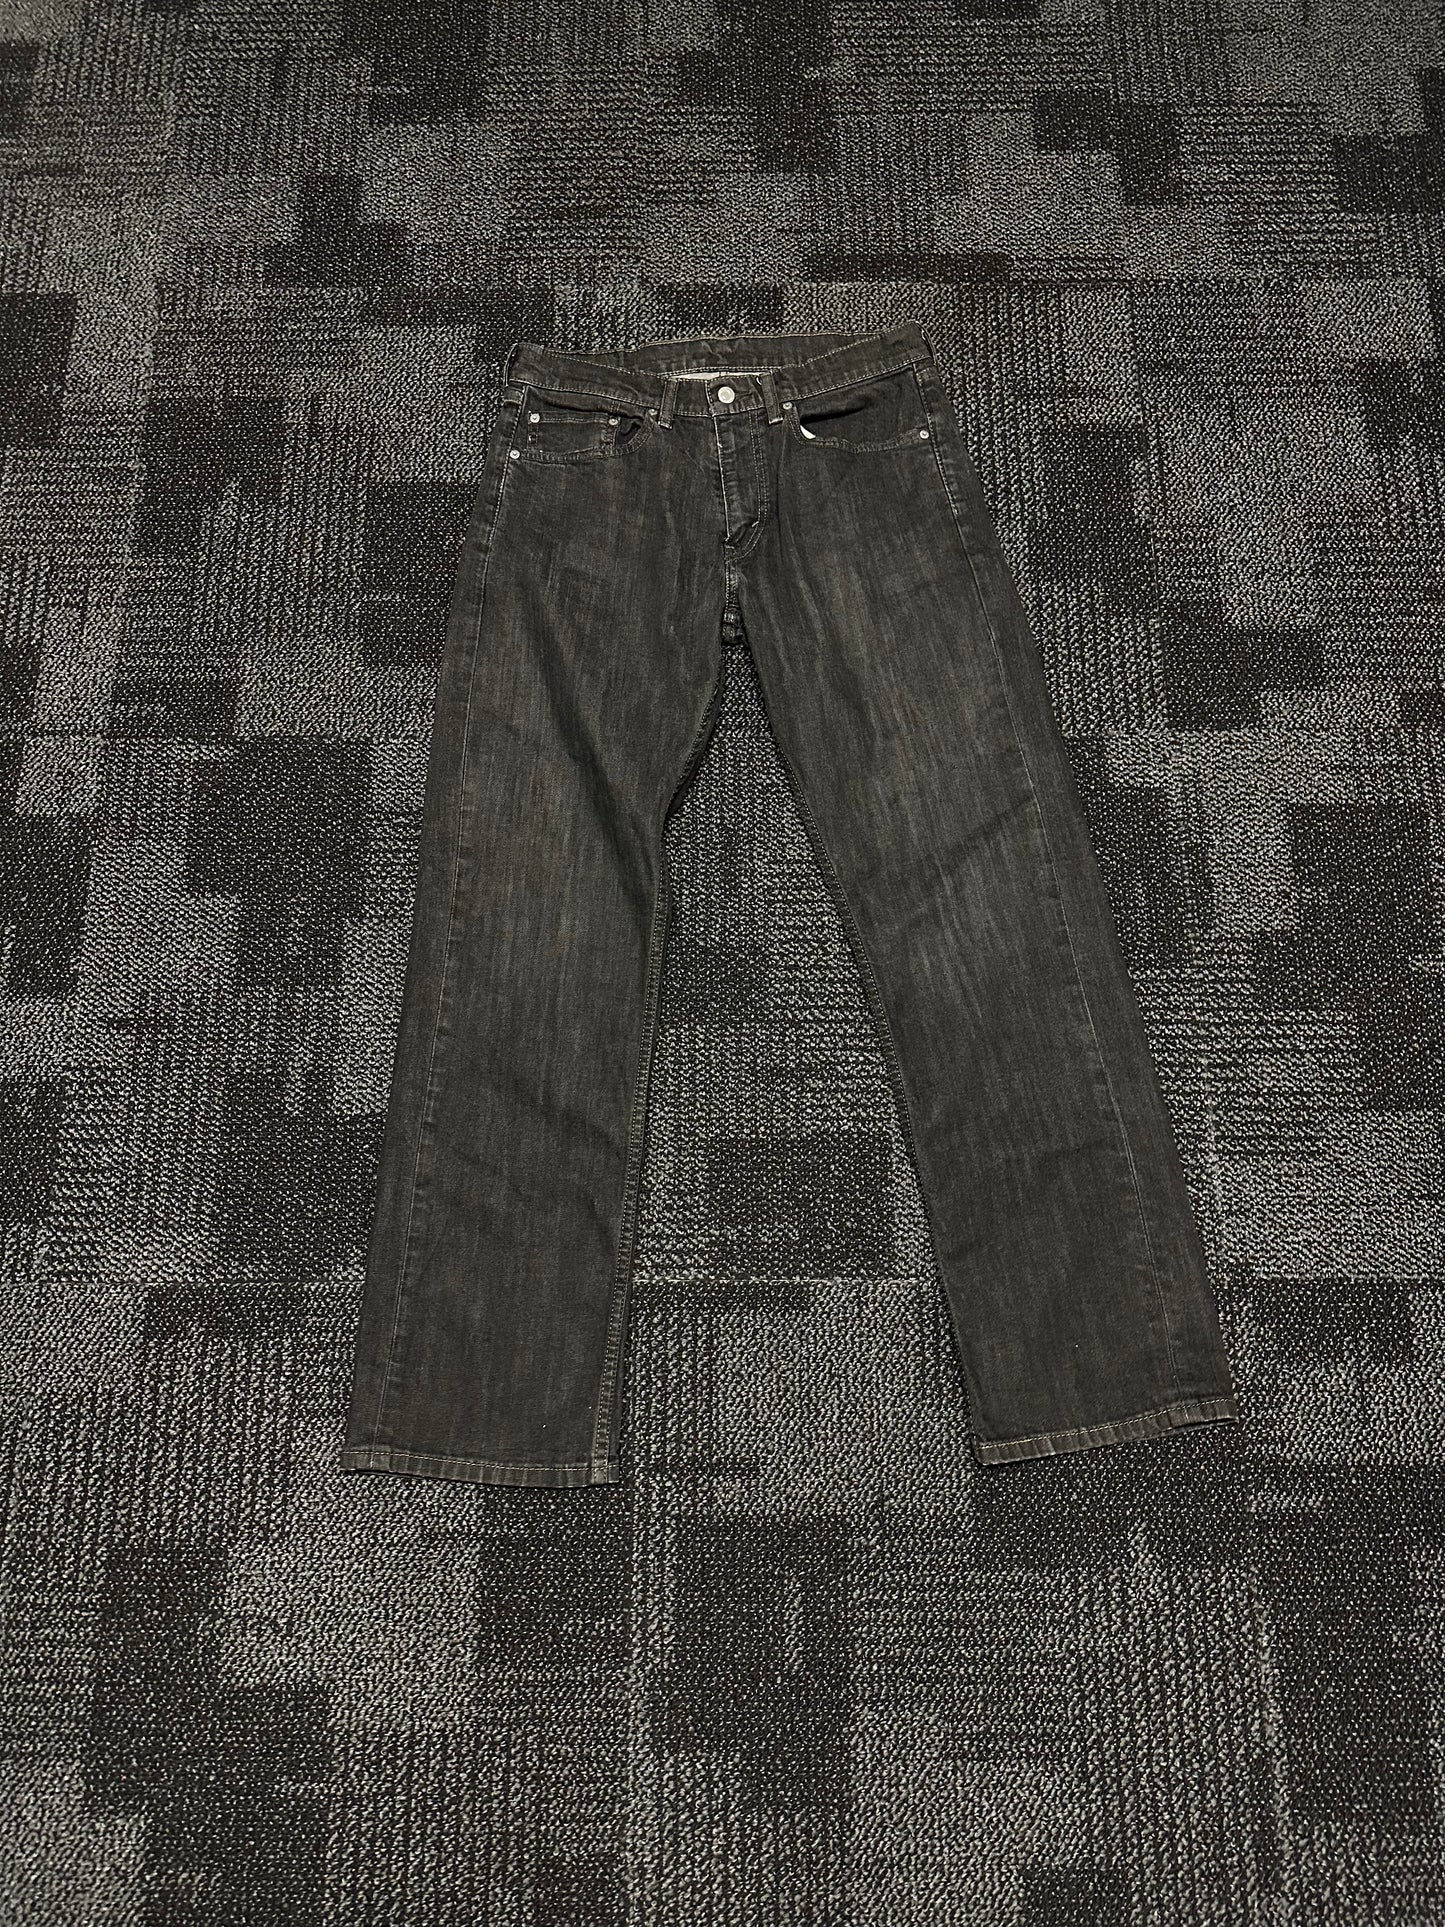 Vintage Levi's 559 Jeans